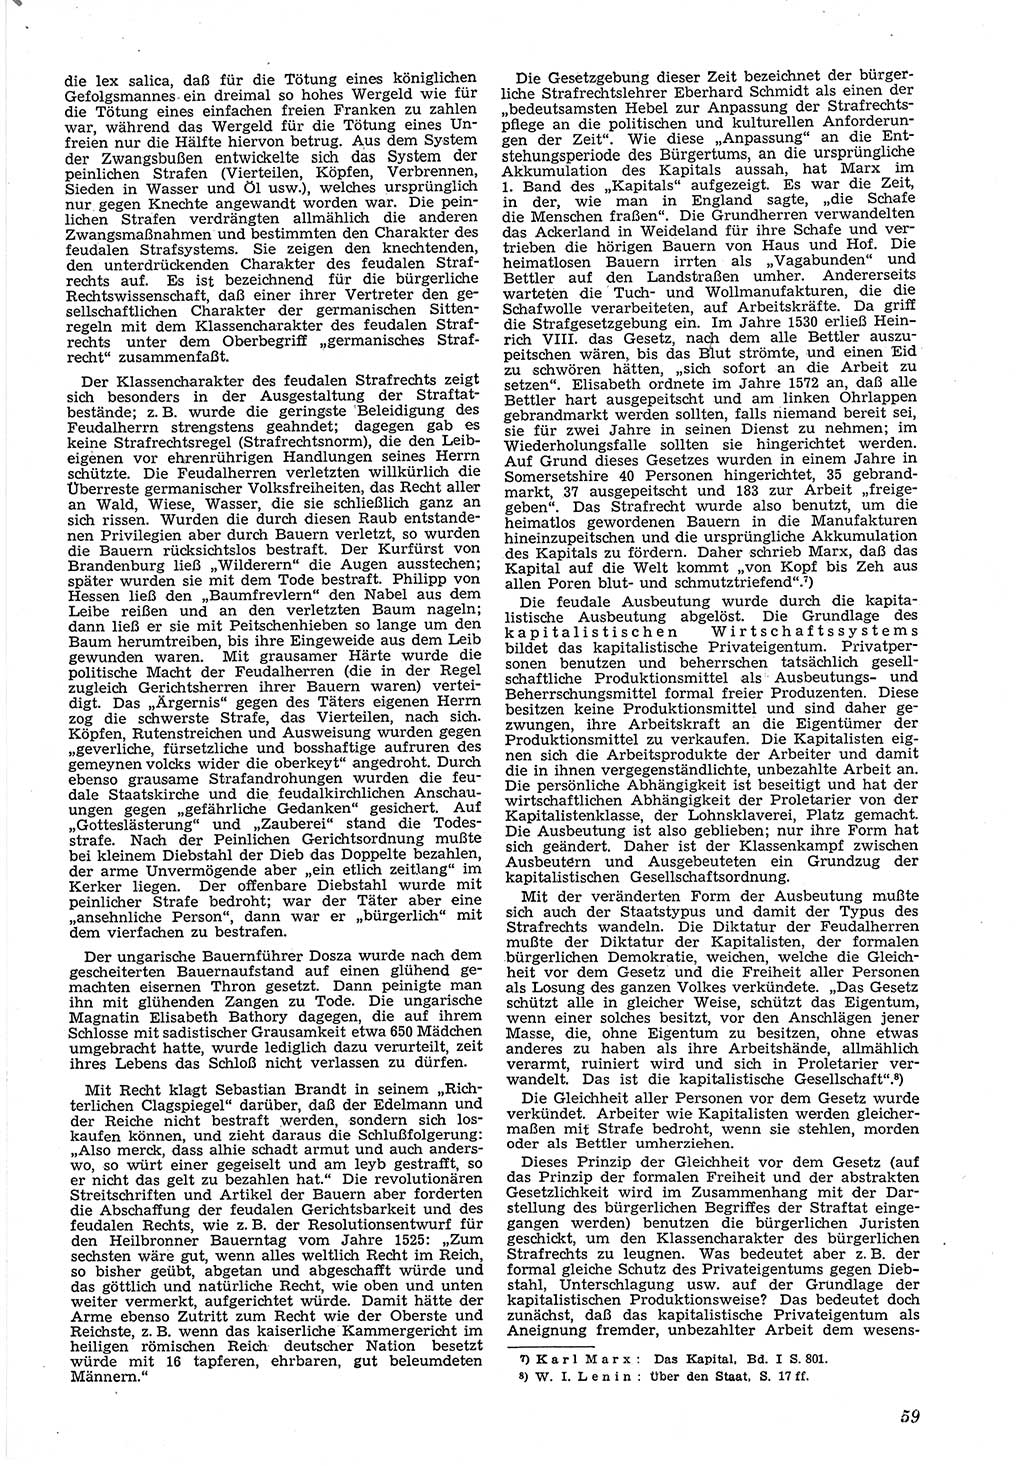 Neue Justiz (NJ), Zeitschrift für Recht und Rechtswissenschaft [Deutsche Demokratische Republik (DDR)], 5. Jahrgang 1951, Seite 59 (NJ DDR 1951, S. 59)